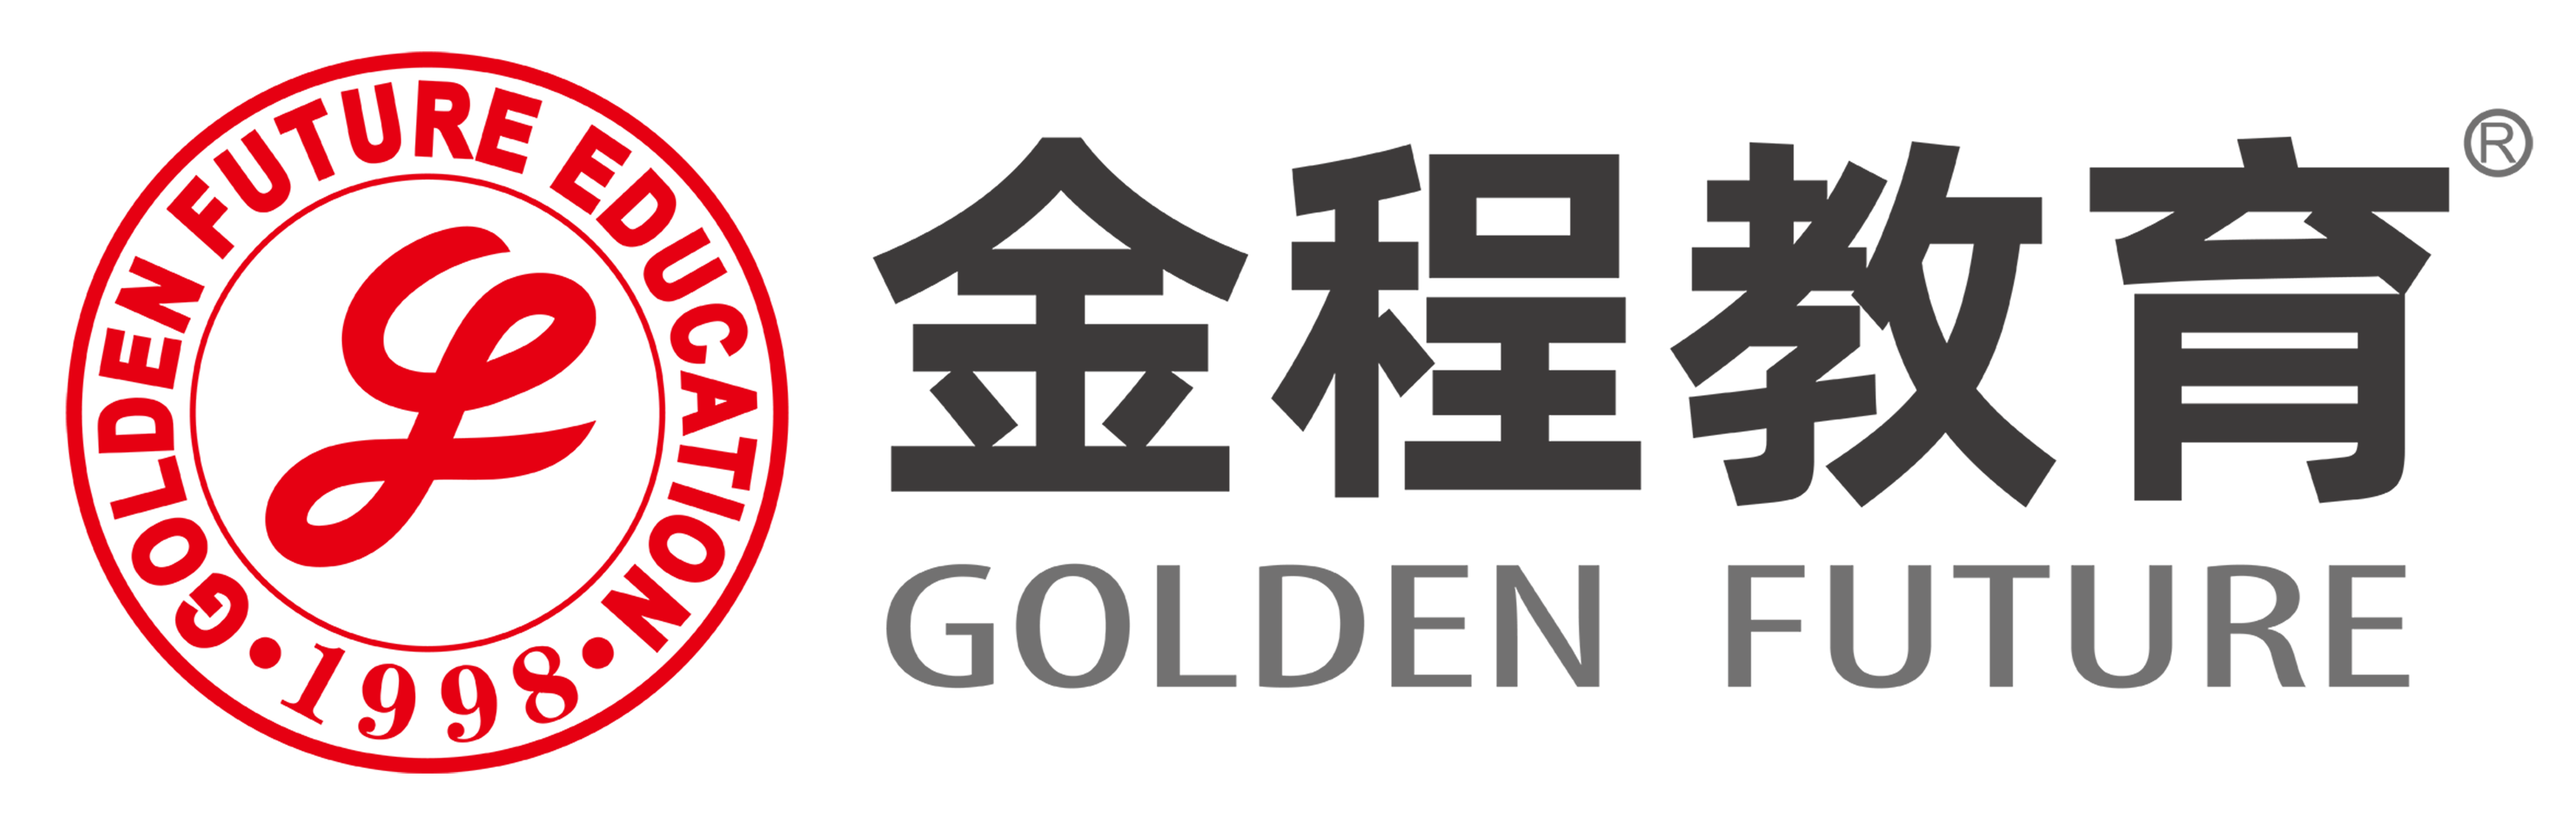 金程最新logo 宣传语2020c-01副本